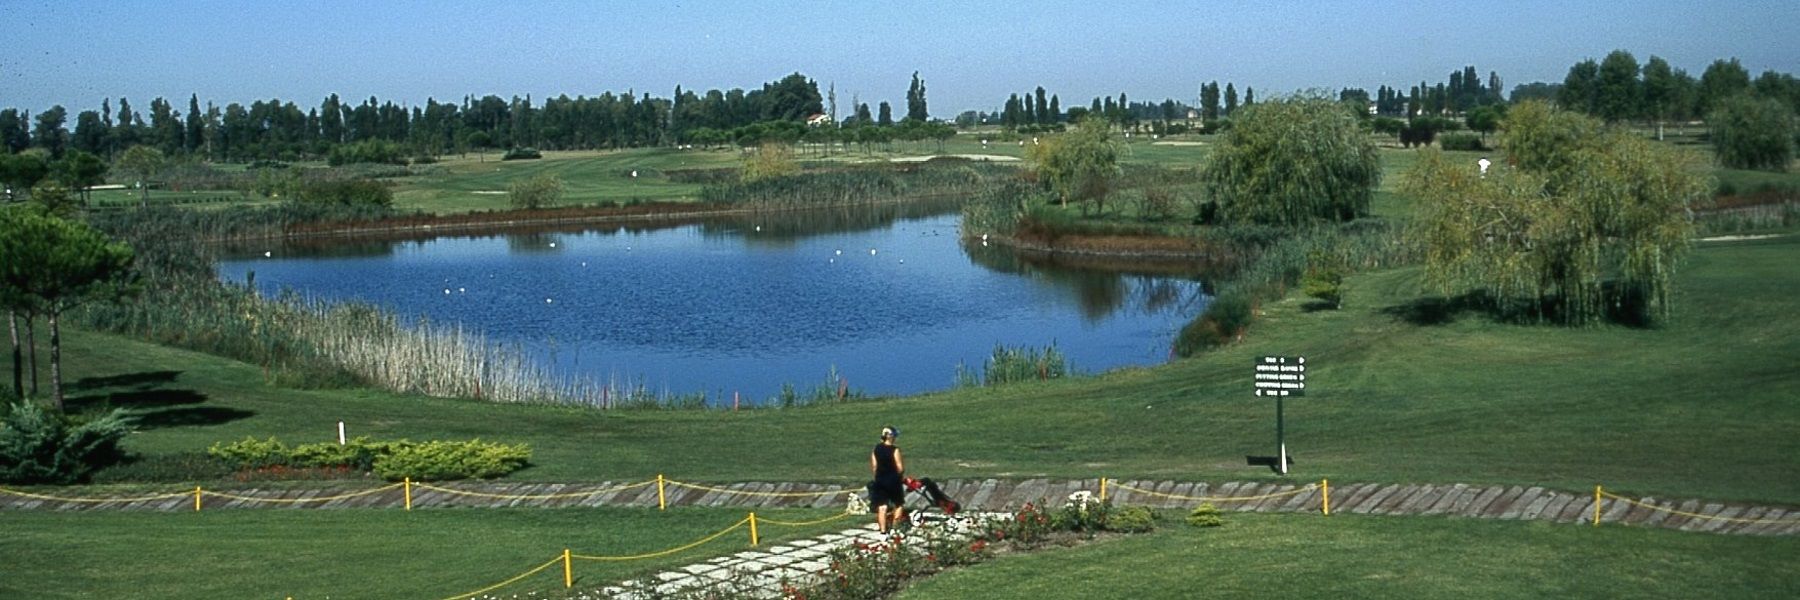 Adriatic Golf Club Cervia - Termine im August